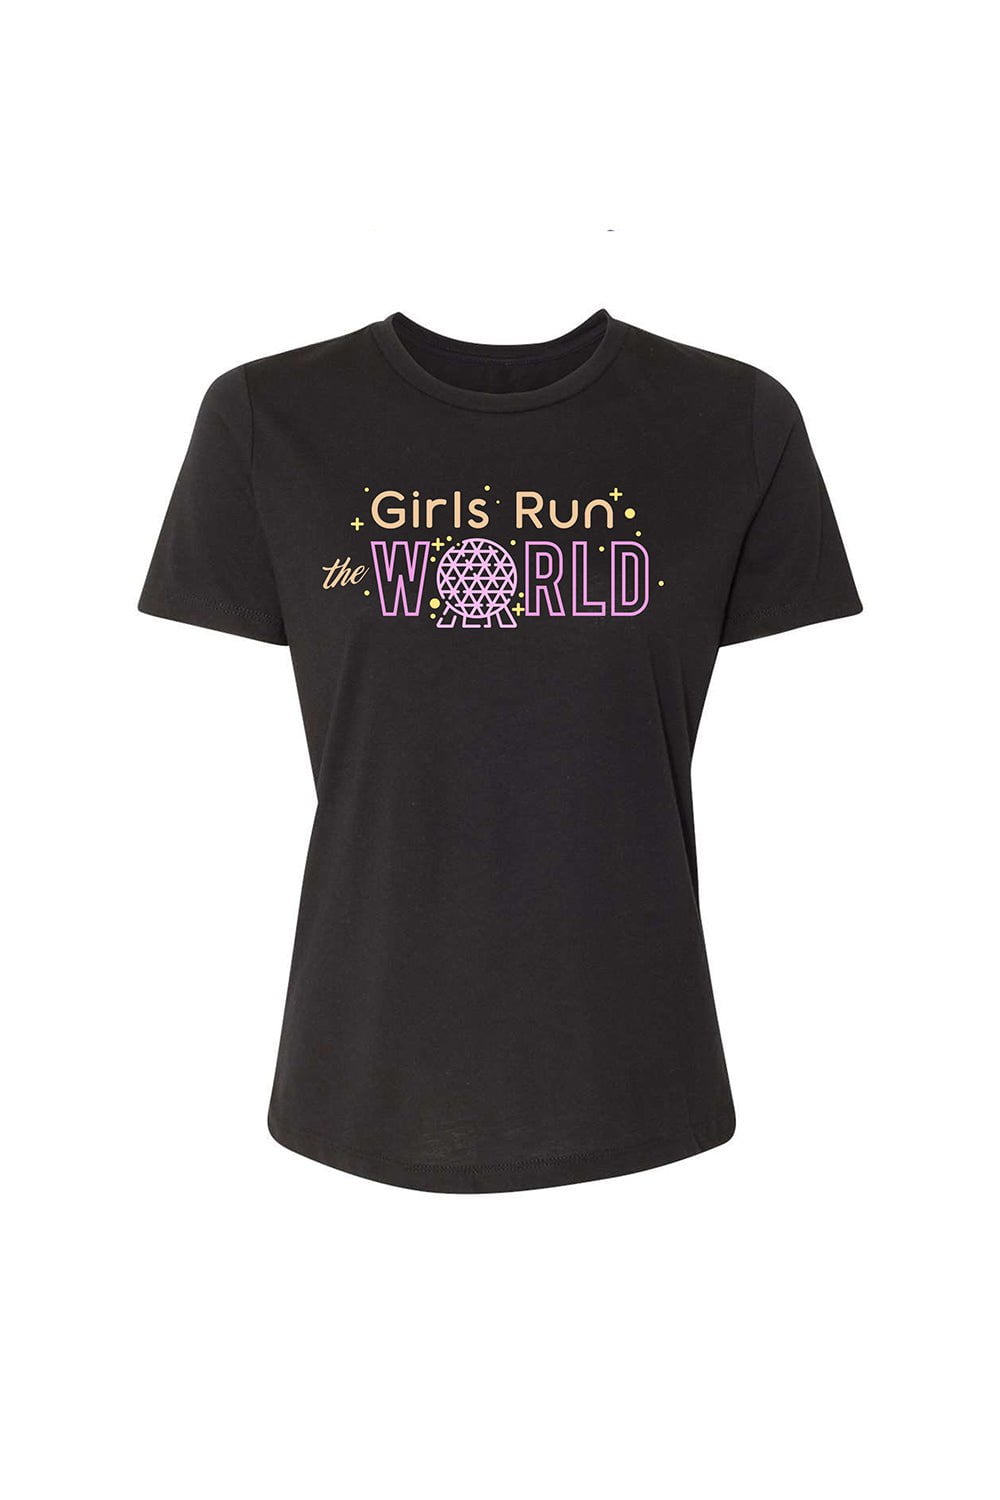 Sarah Marie Design Studio Women's Tee Small / Black Girls Run The World Women's T-shirt